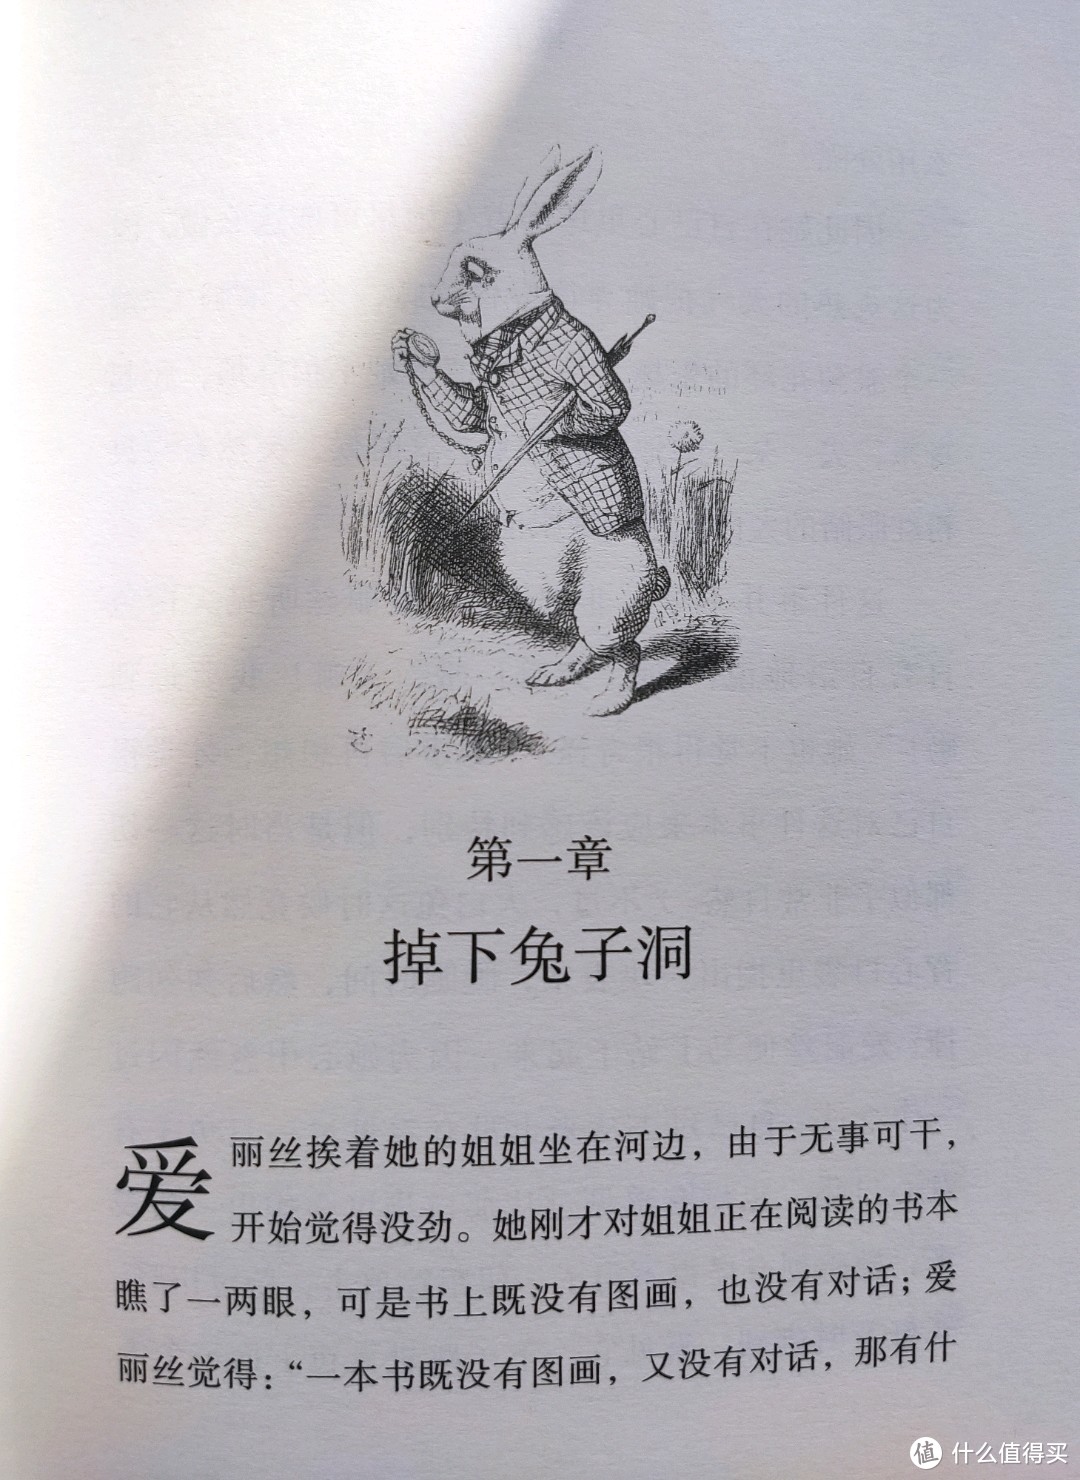 海豚出版社150周年纪念版《爱丽丝男友奇境》小晒